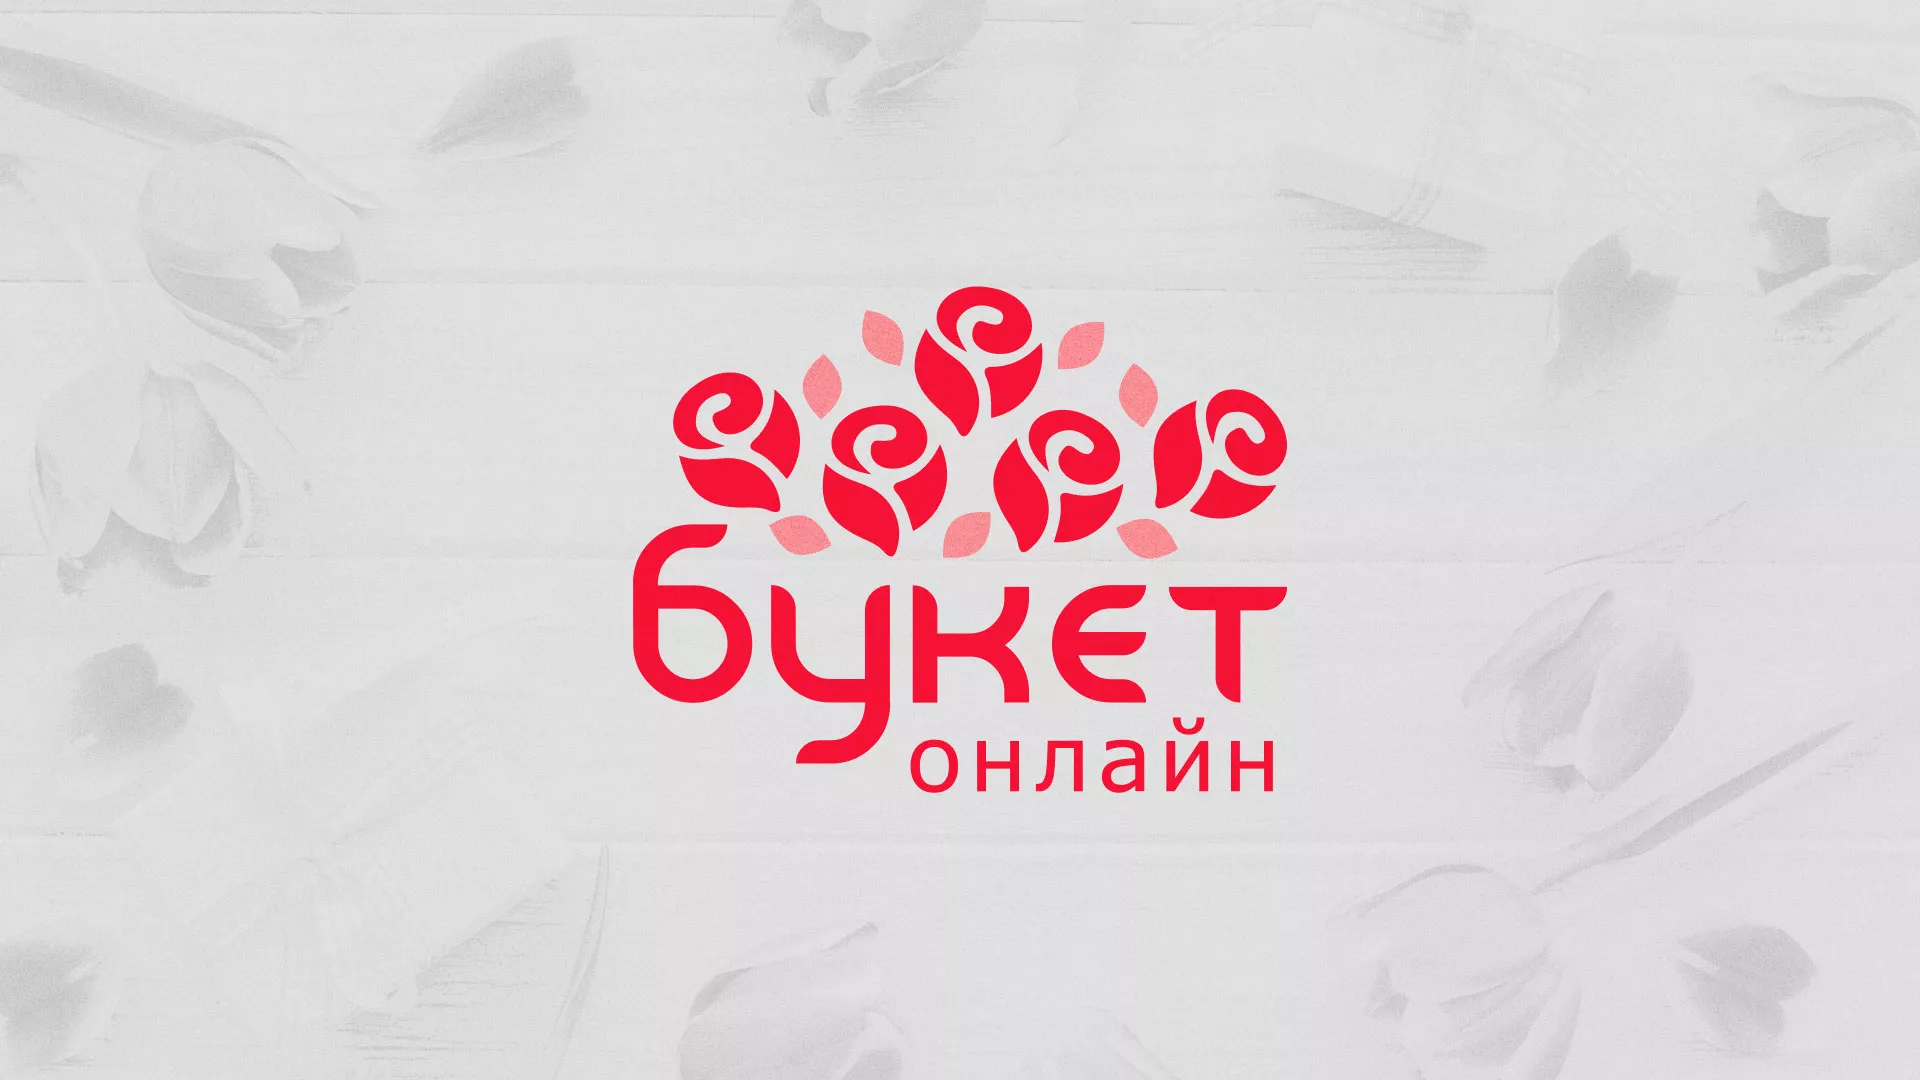 Создание интернет-магазина «Букет-онлайн» по цветам в Бородино